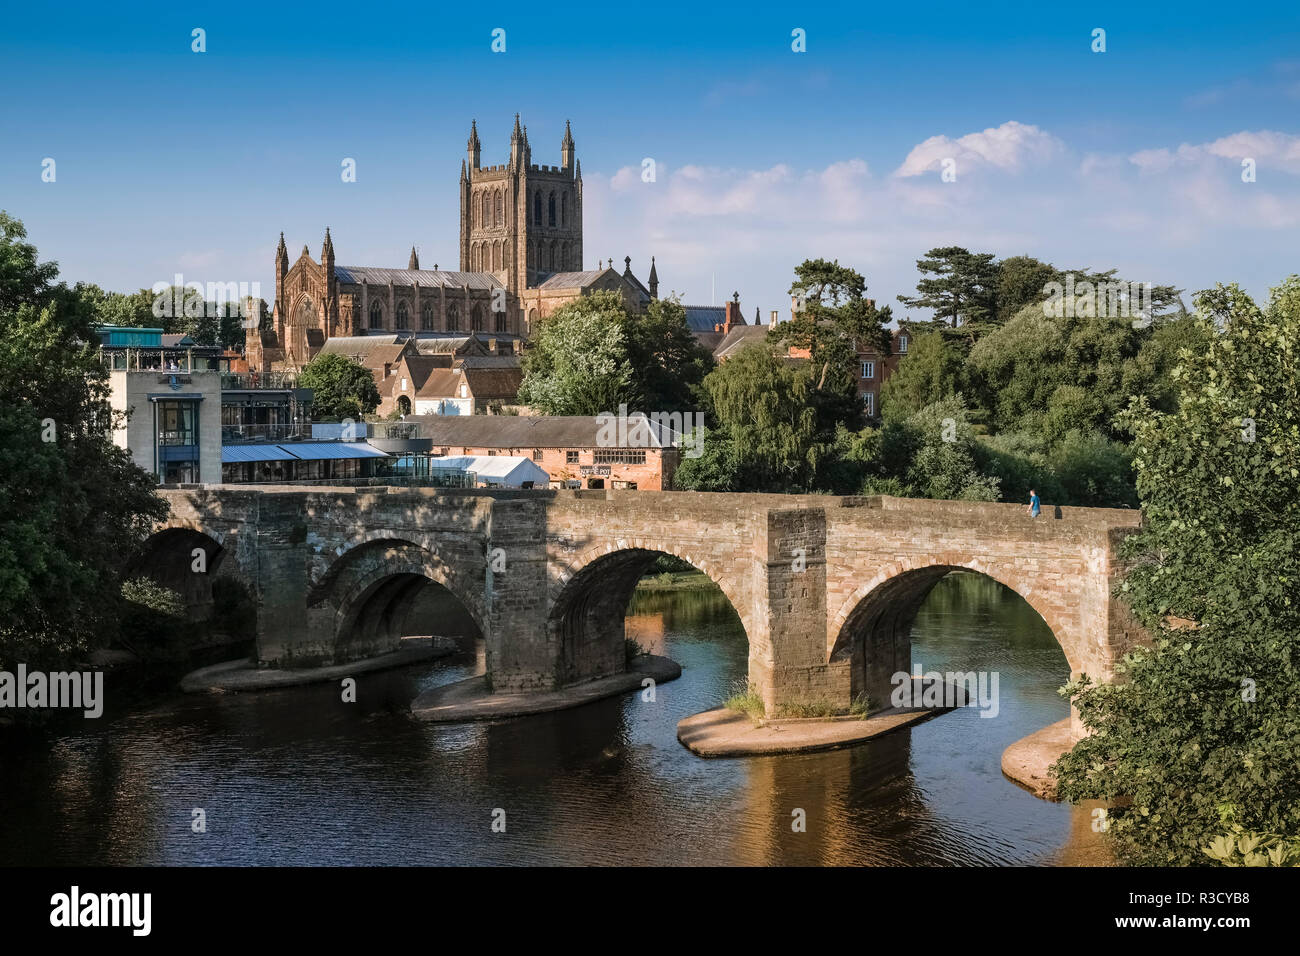 Blick auf die gotische Kathedrale von Hereford und St Martins Street Brücke den Fluss Wye, Hereford, Herefordshire, England UK Kreuzung Stockfoto